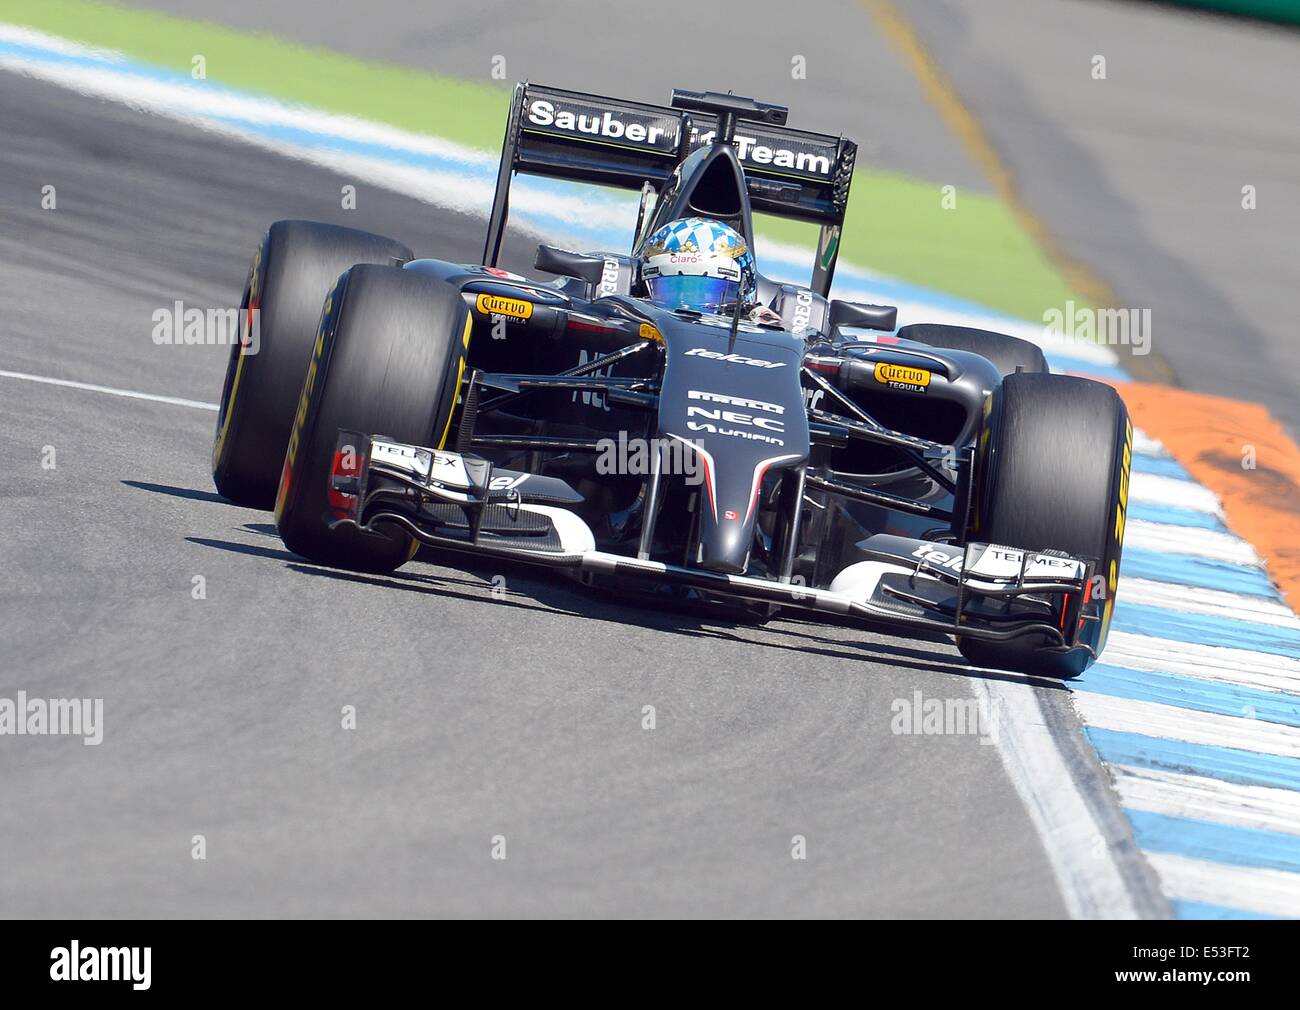 Hockenheim, Alemania. El 18 de julio, 2014. Piloto de Fórmula 1 alemán Adrian Sutil del equipo Sauber durante la segunda sesión de entrenamientos libres en el Hockenheimring Race Track en Hockenheim, Alemania Crédito: Además de los deportes de acción/Alamy Live News Foto de stock